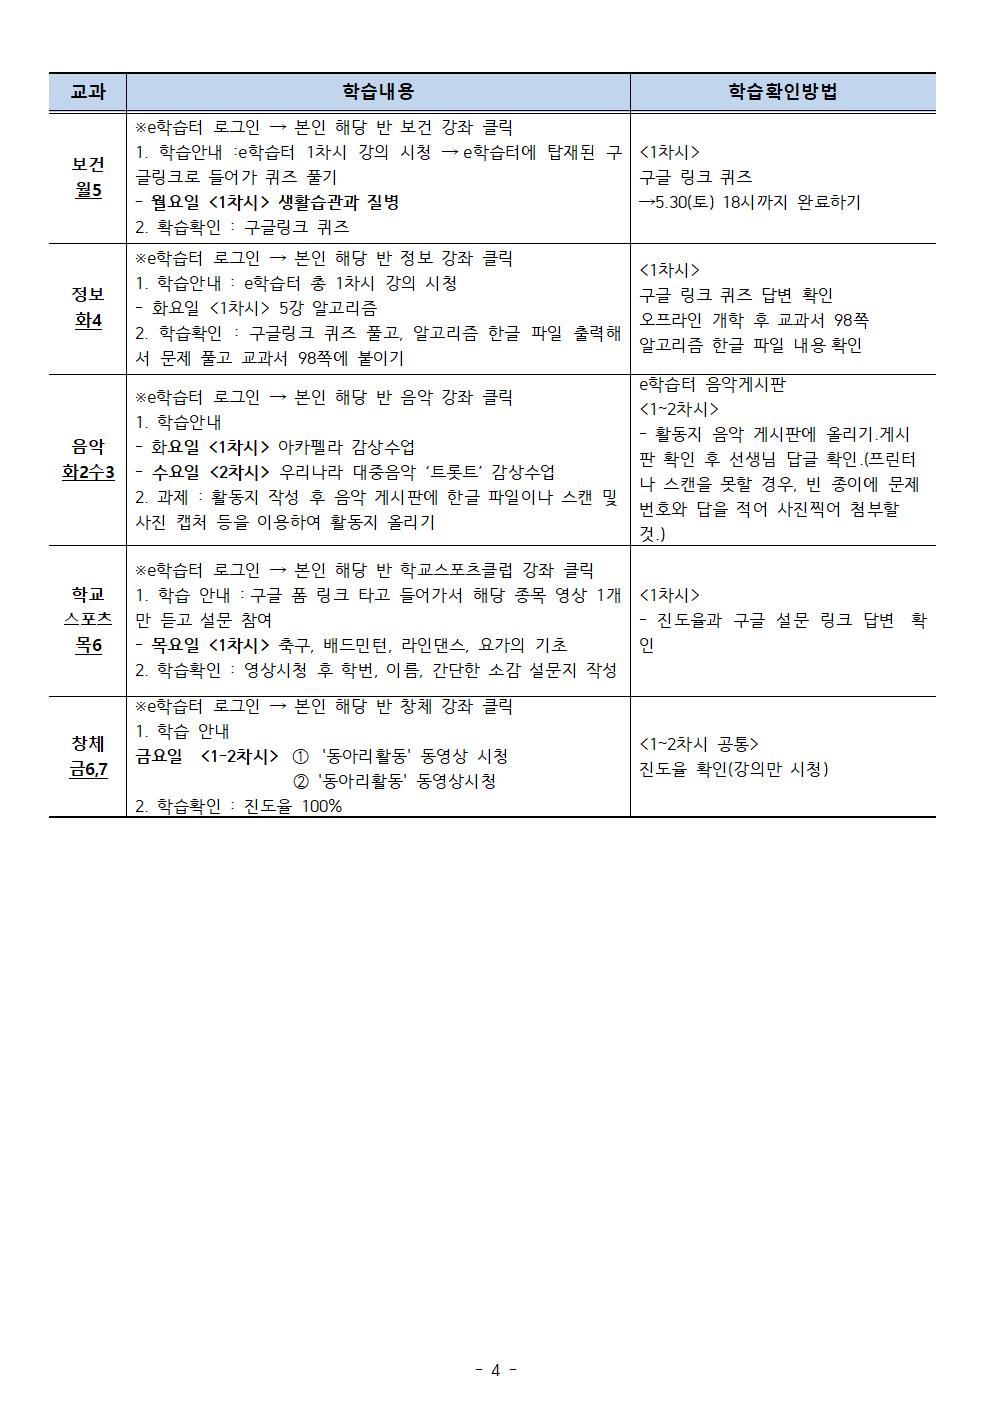 【5월5주차】2학년온라인학습내용 안내 탑재용(5.25-29)004